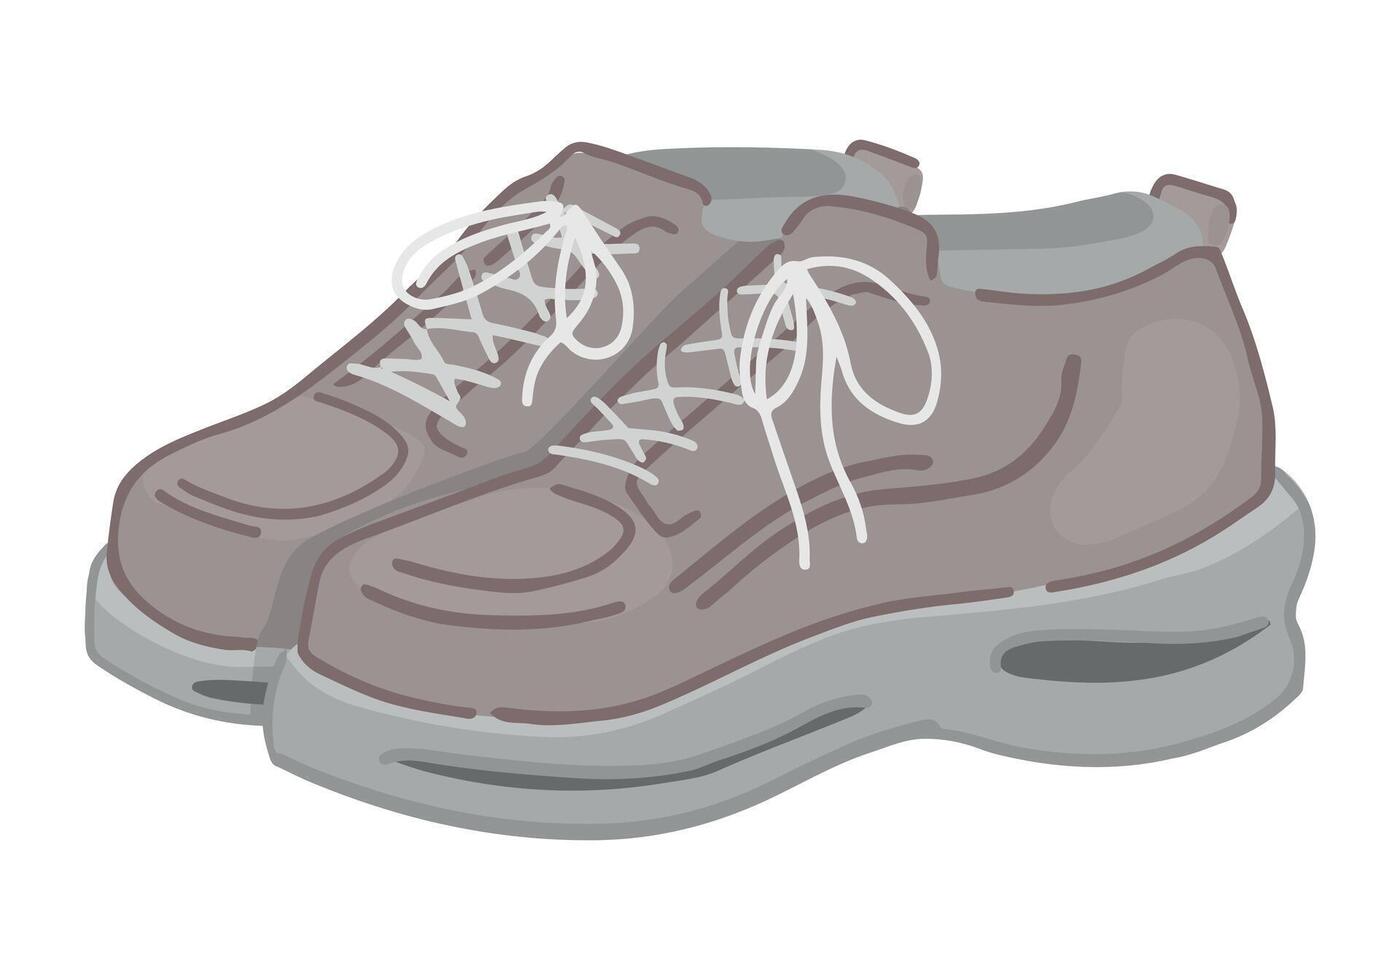 rabisco do Esportes sapato. grampo arte do tênis calçados. desenho animado vetor ilustração clipart isolado em branco.